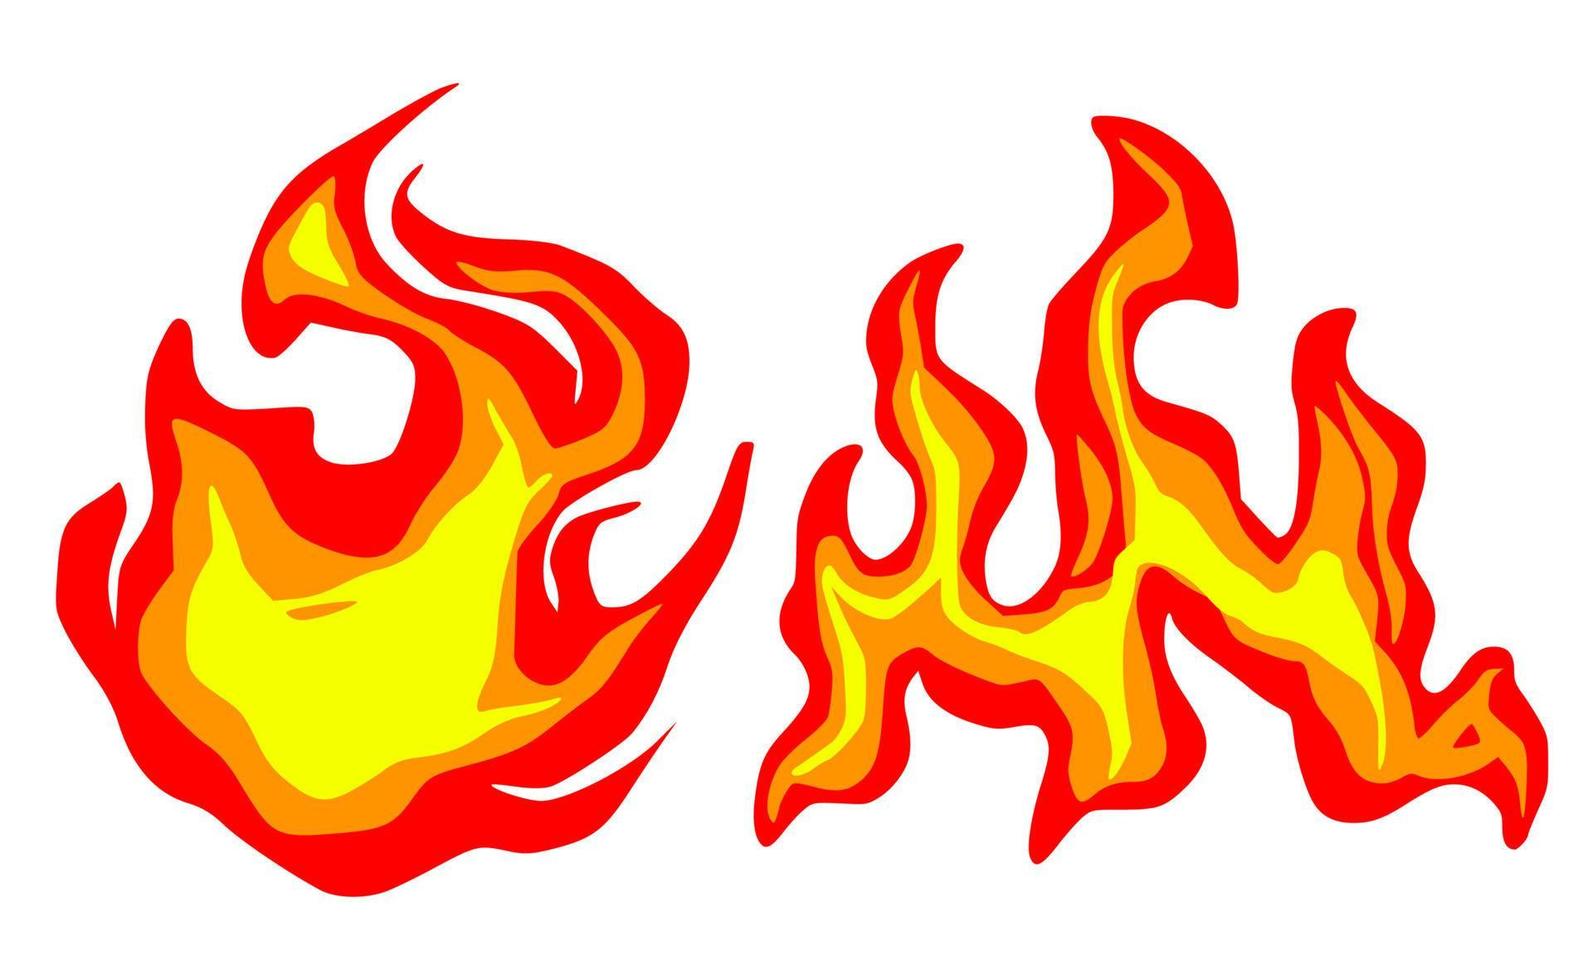 Fire cartoon element vector